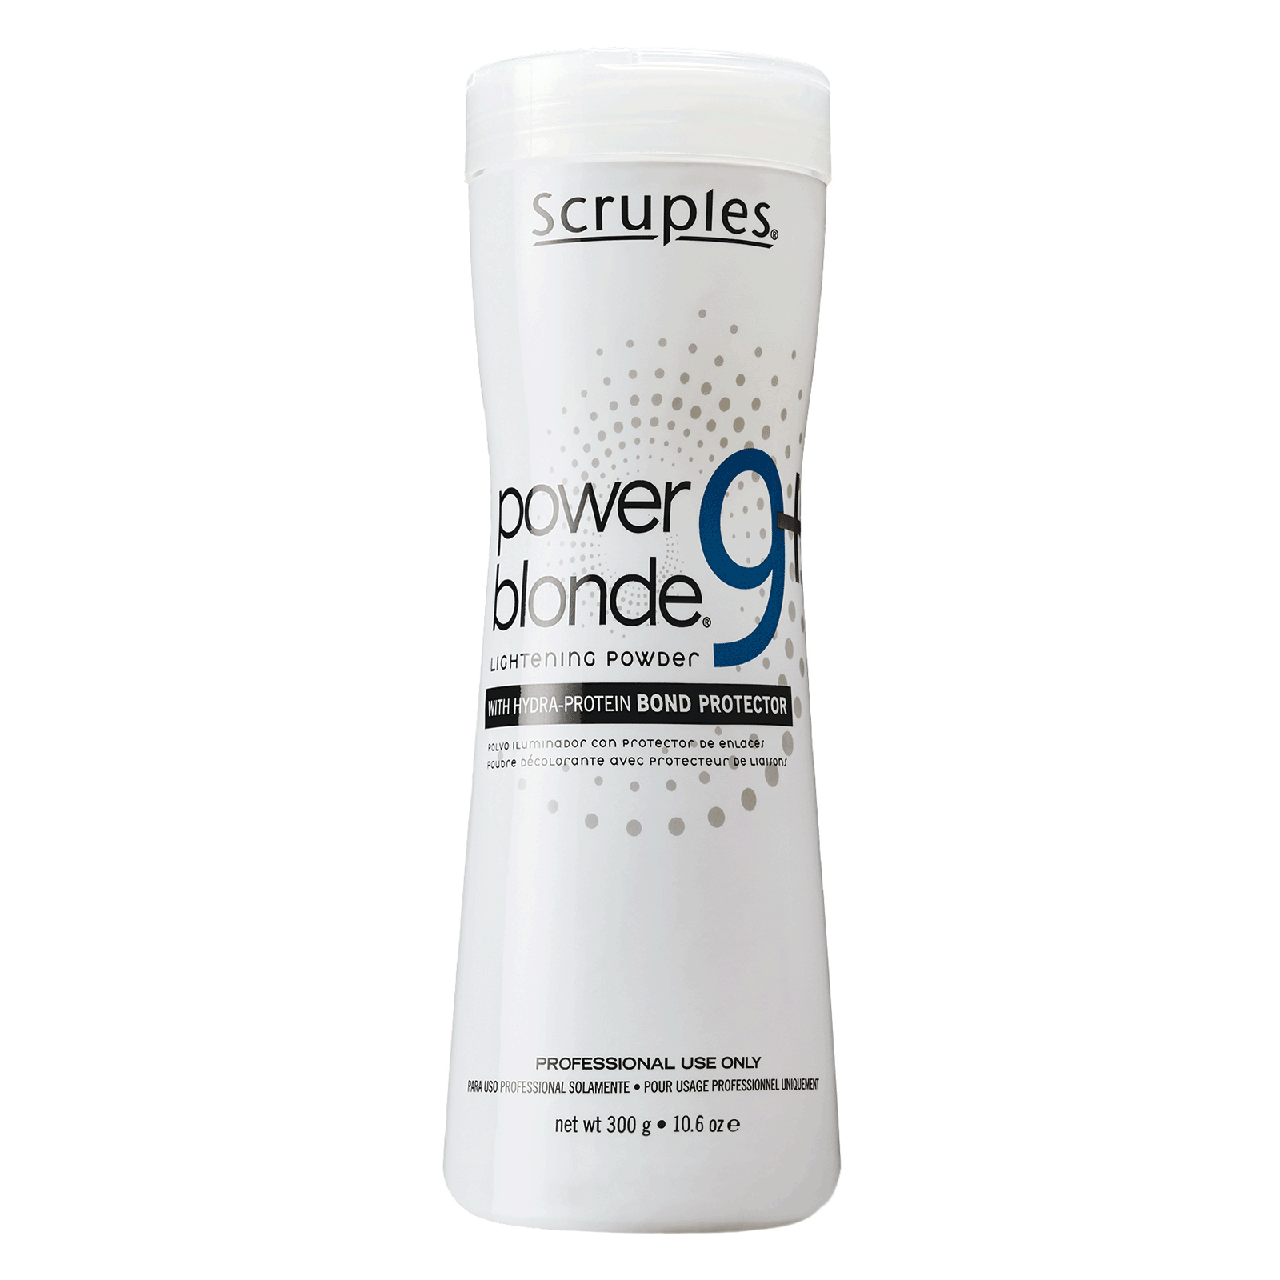 Пудра для осветления волос на 9 тонов Scruples Power Blonde 9+ Lightening Powder 650g (8639)